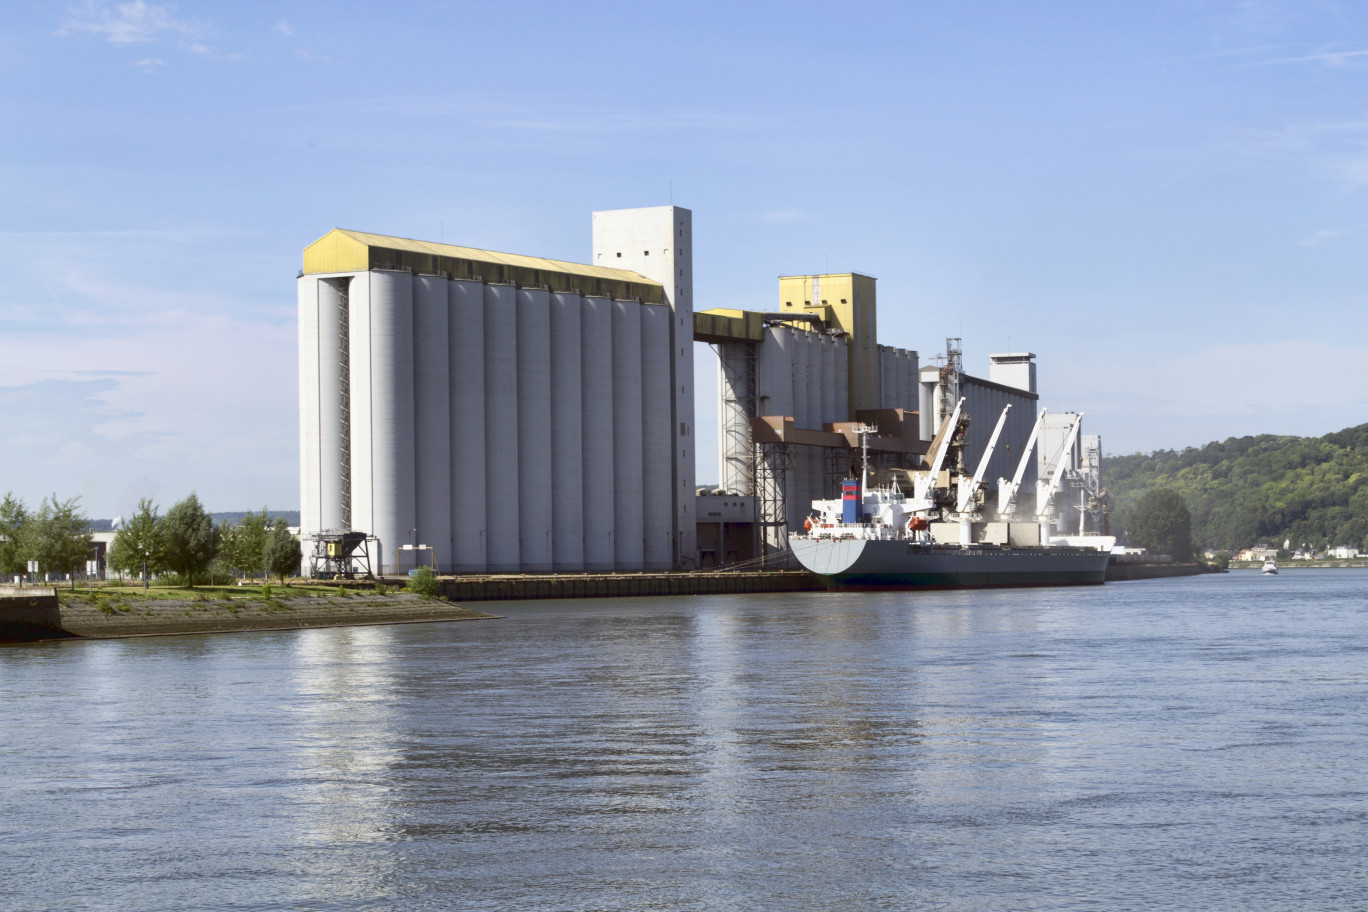  2020 a été une année record pour l'exportation de céréales depuis le port de Rouen. © Adobe Stock/Brimeux